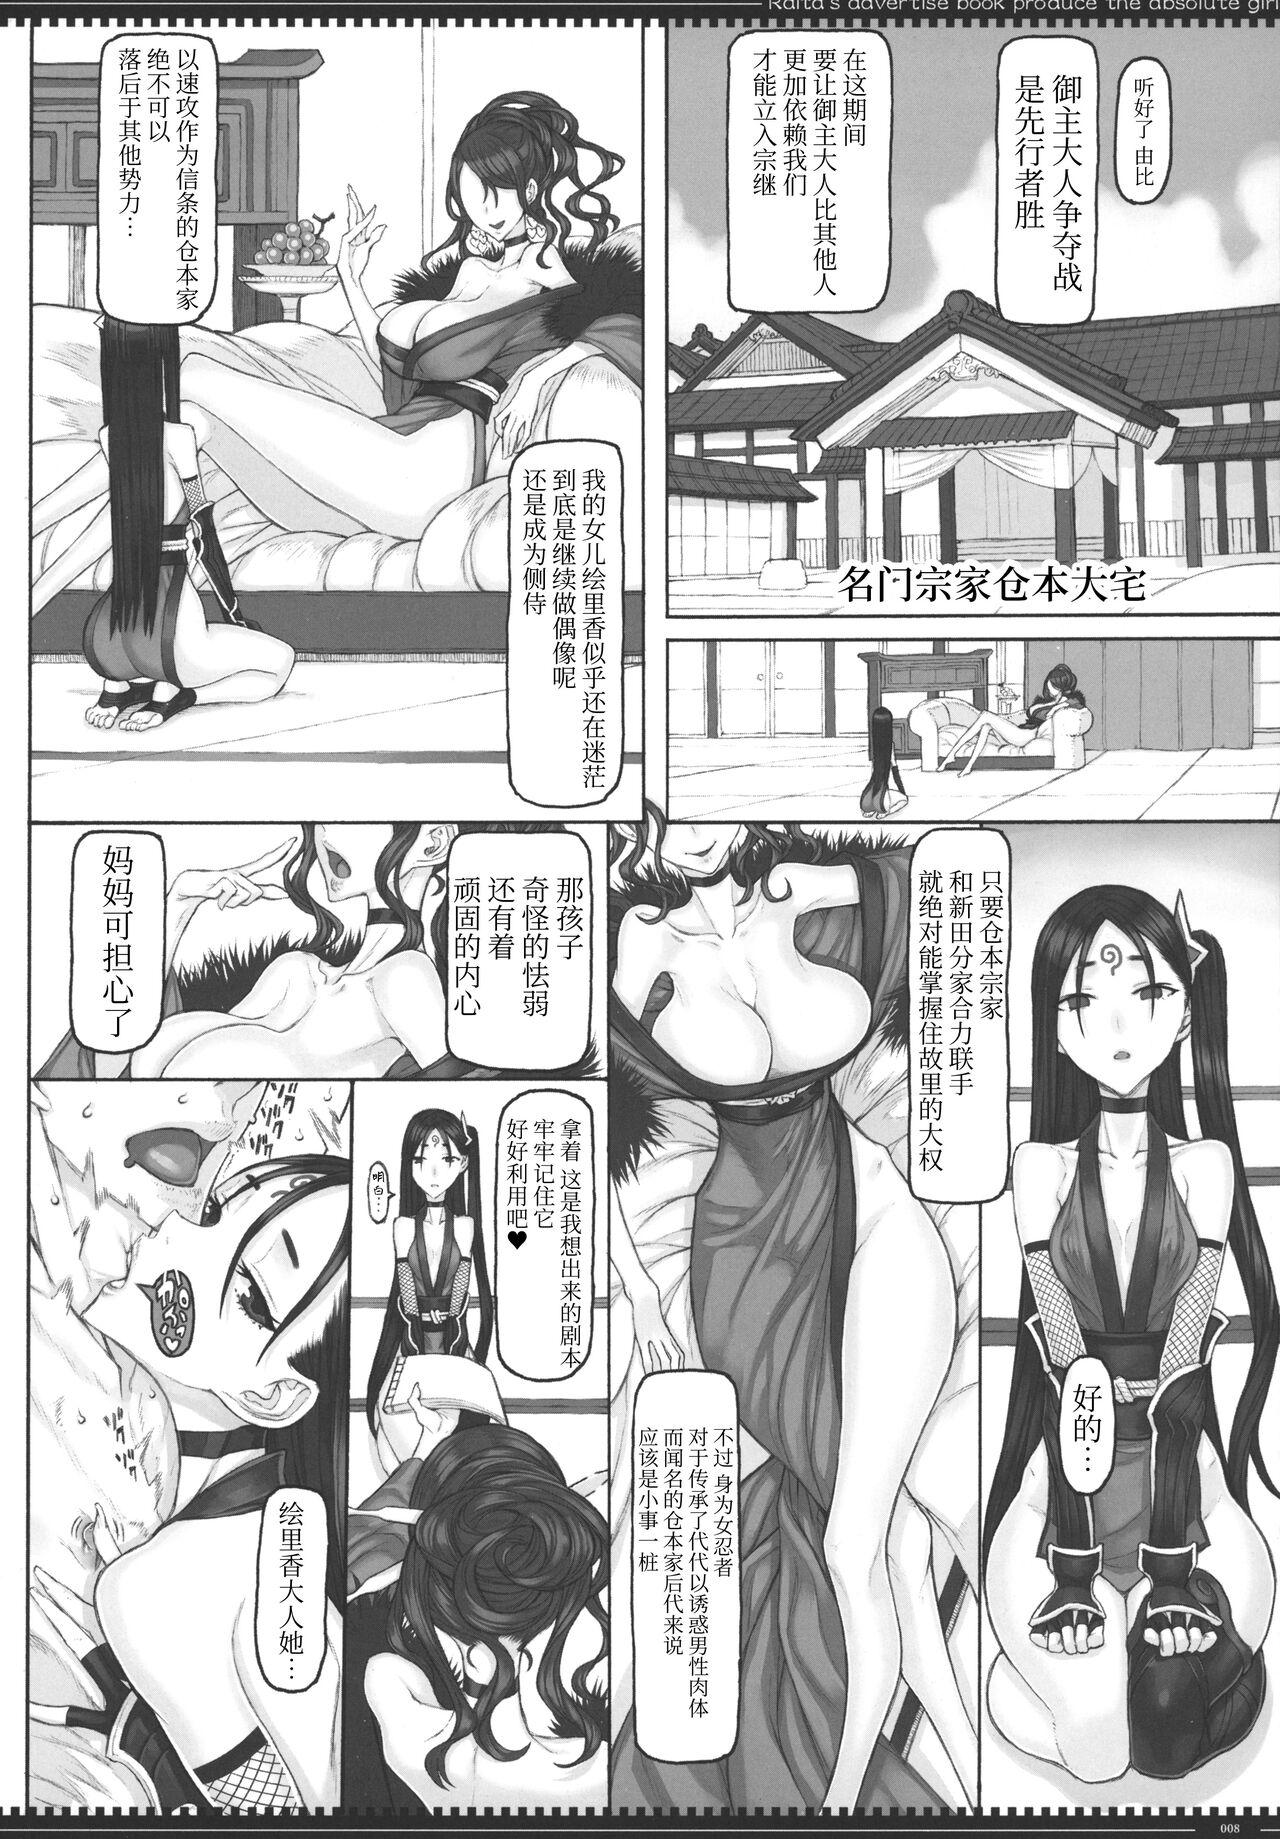 For Mahou Shoujo 22.0 + C101 Kaijou Gentei Orihon - Zettai junpaku mahou shoujo Taboo - Page 7